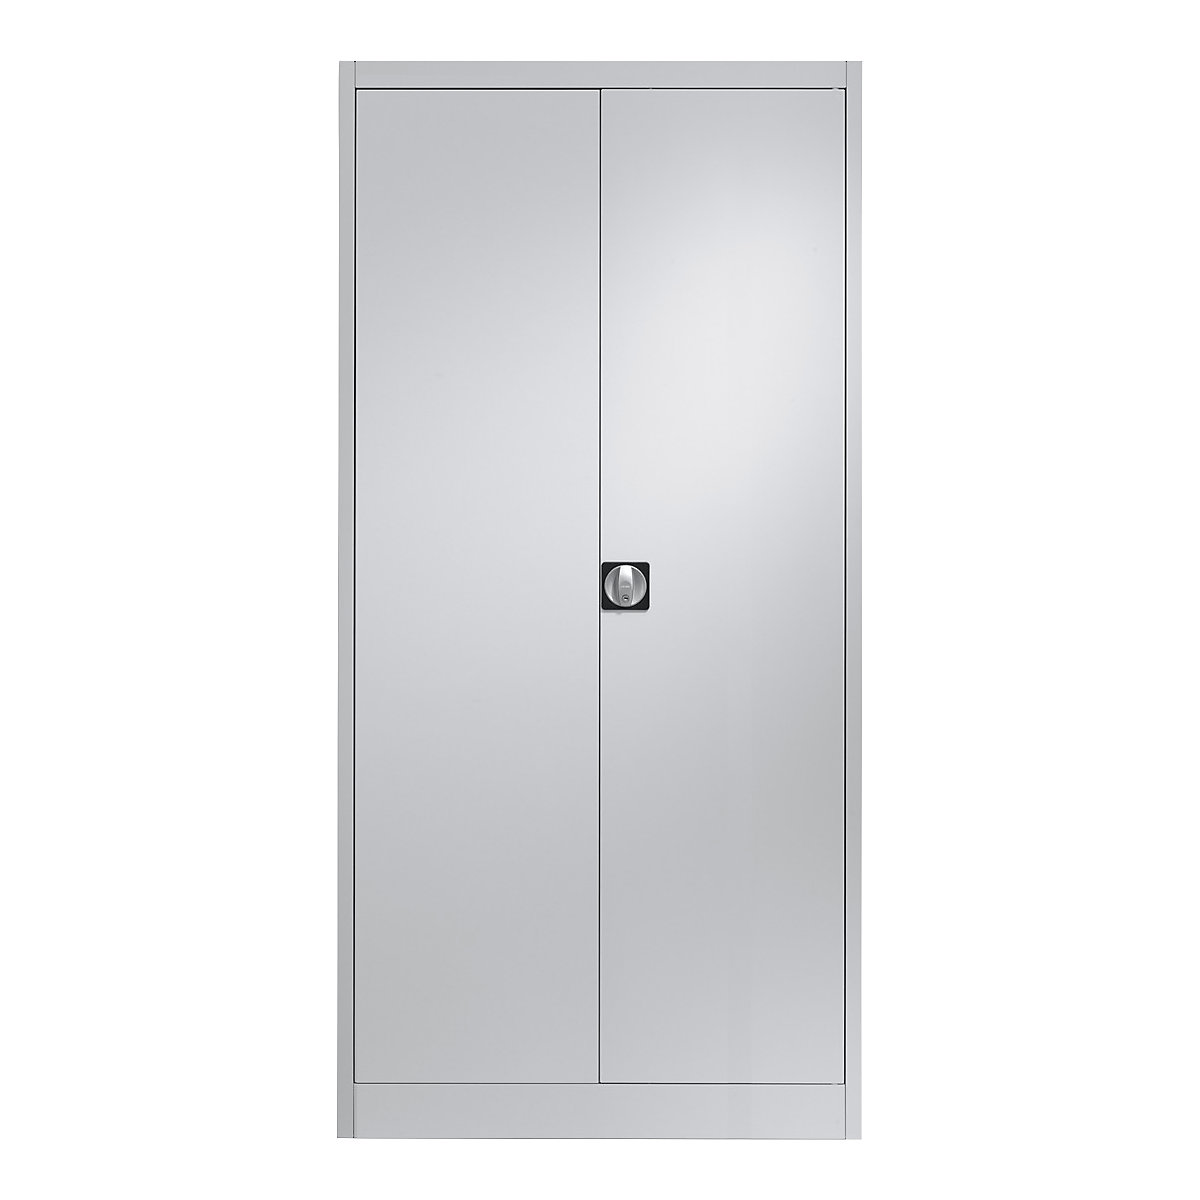 Ocelová skříň s otočnými dveřmi – mauser, 4 police, h 420 mm, světle šedá-3